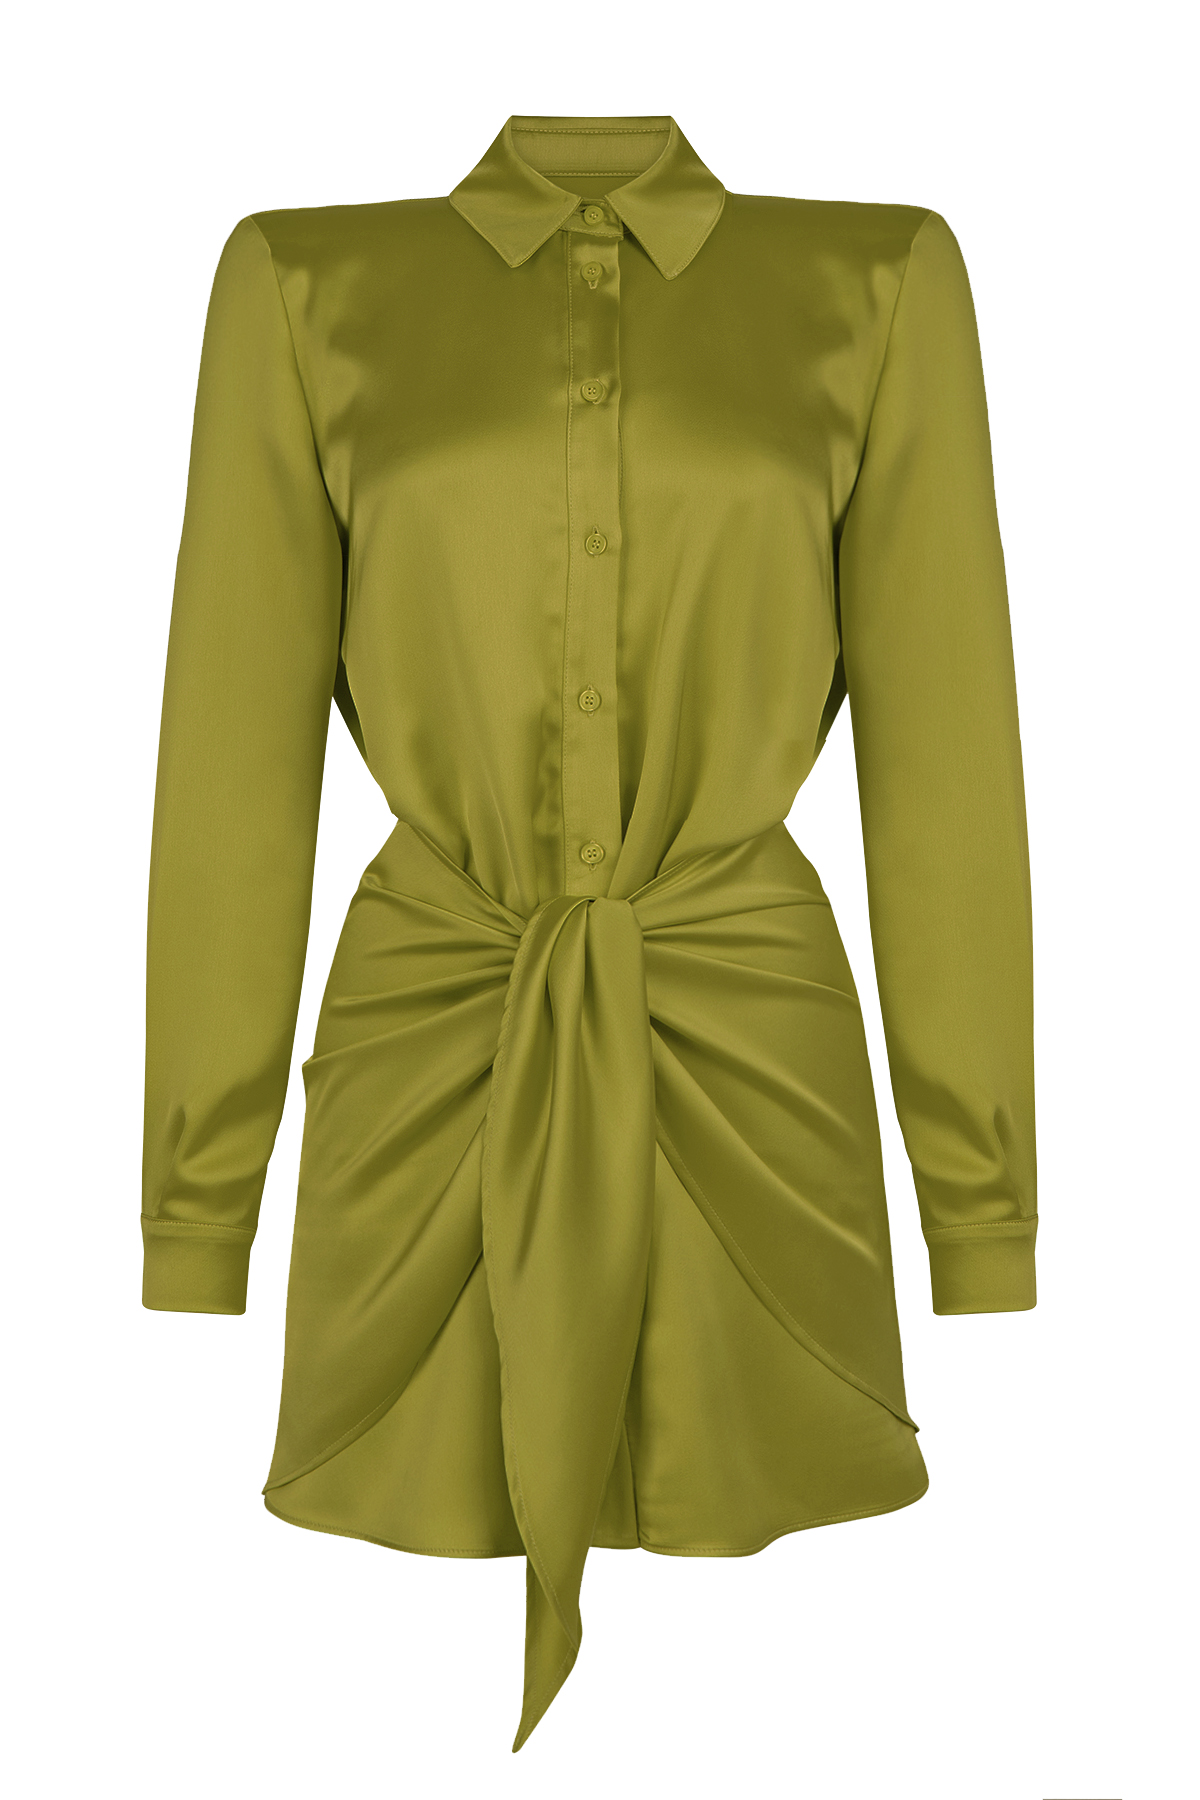 PORTA Satin Green Mini Shirt Dress